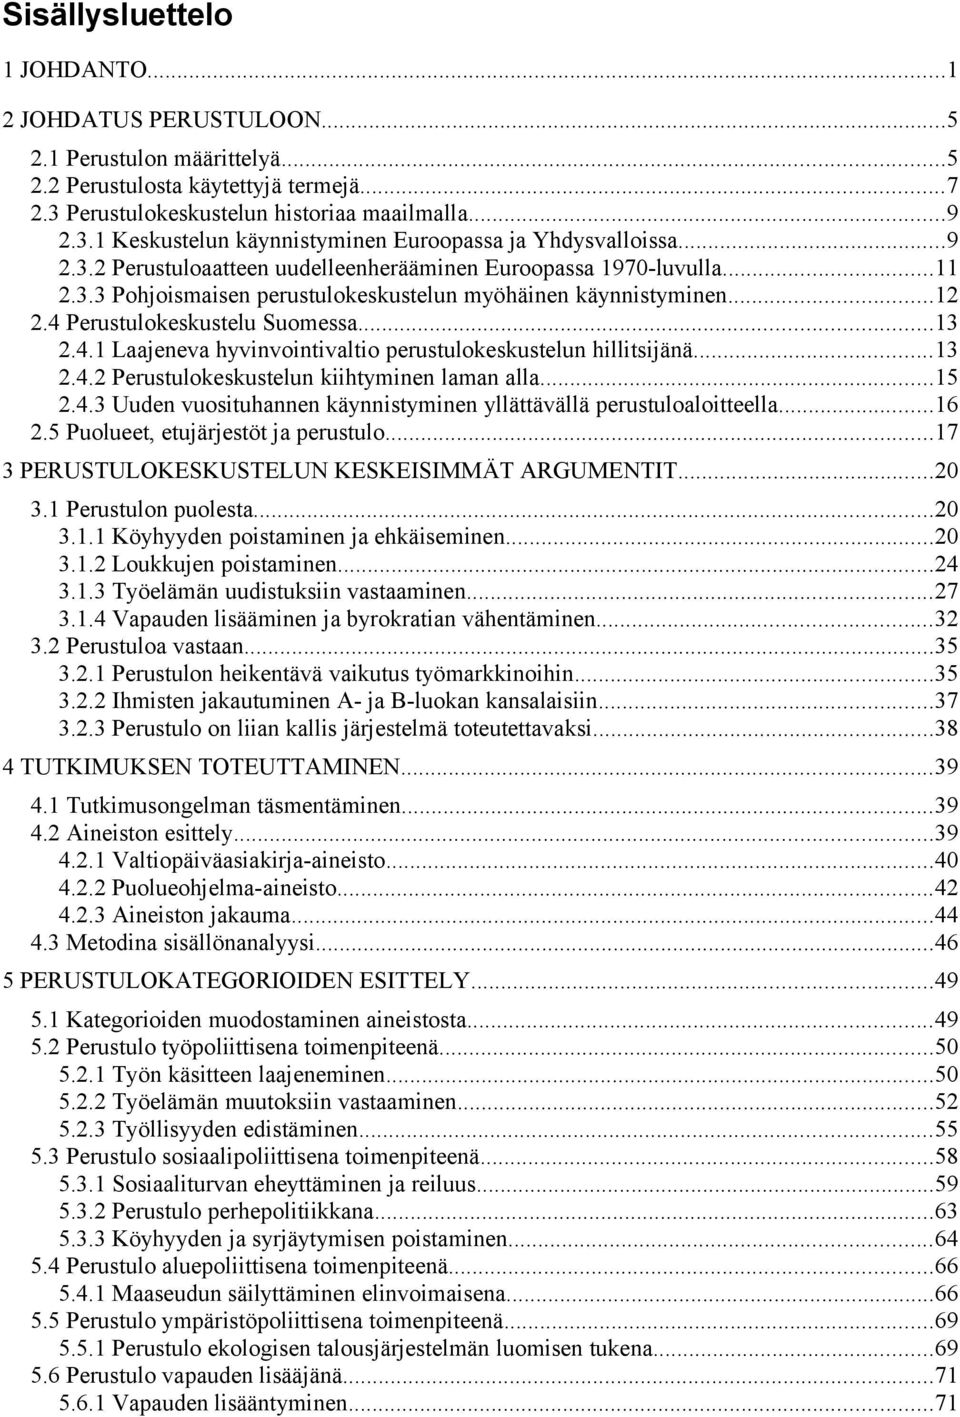 Perustulokeskustelu Suomessa...13 2.4.1 Laajeneva hyvinvointivaltio perustulokeskustelun hillitsijänä...13 2.4.2 Perustulokeskustelun kiihtyminen laman alla...15 2.4.3 Uuden vuosituhannen käynnistyminen yllättävällä perustuloaloitteella.